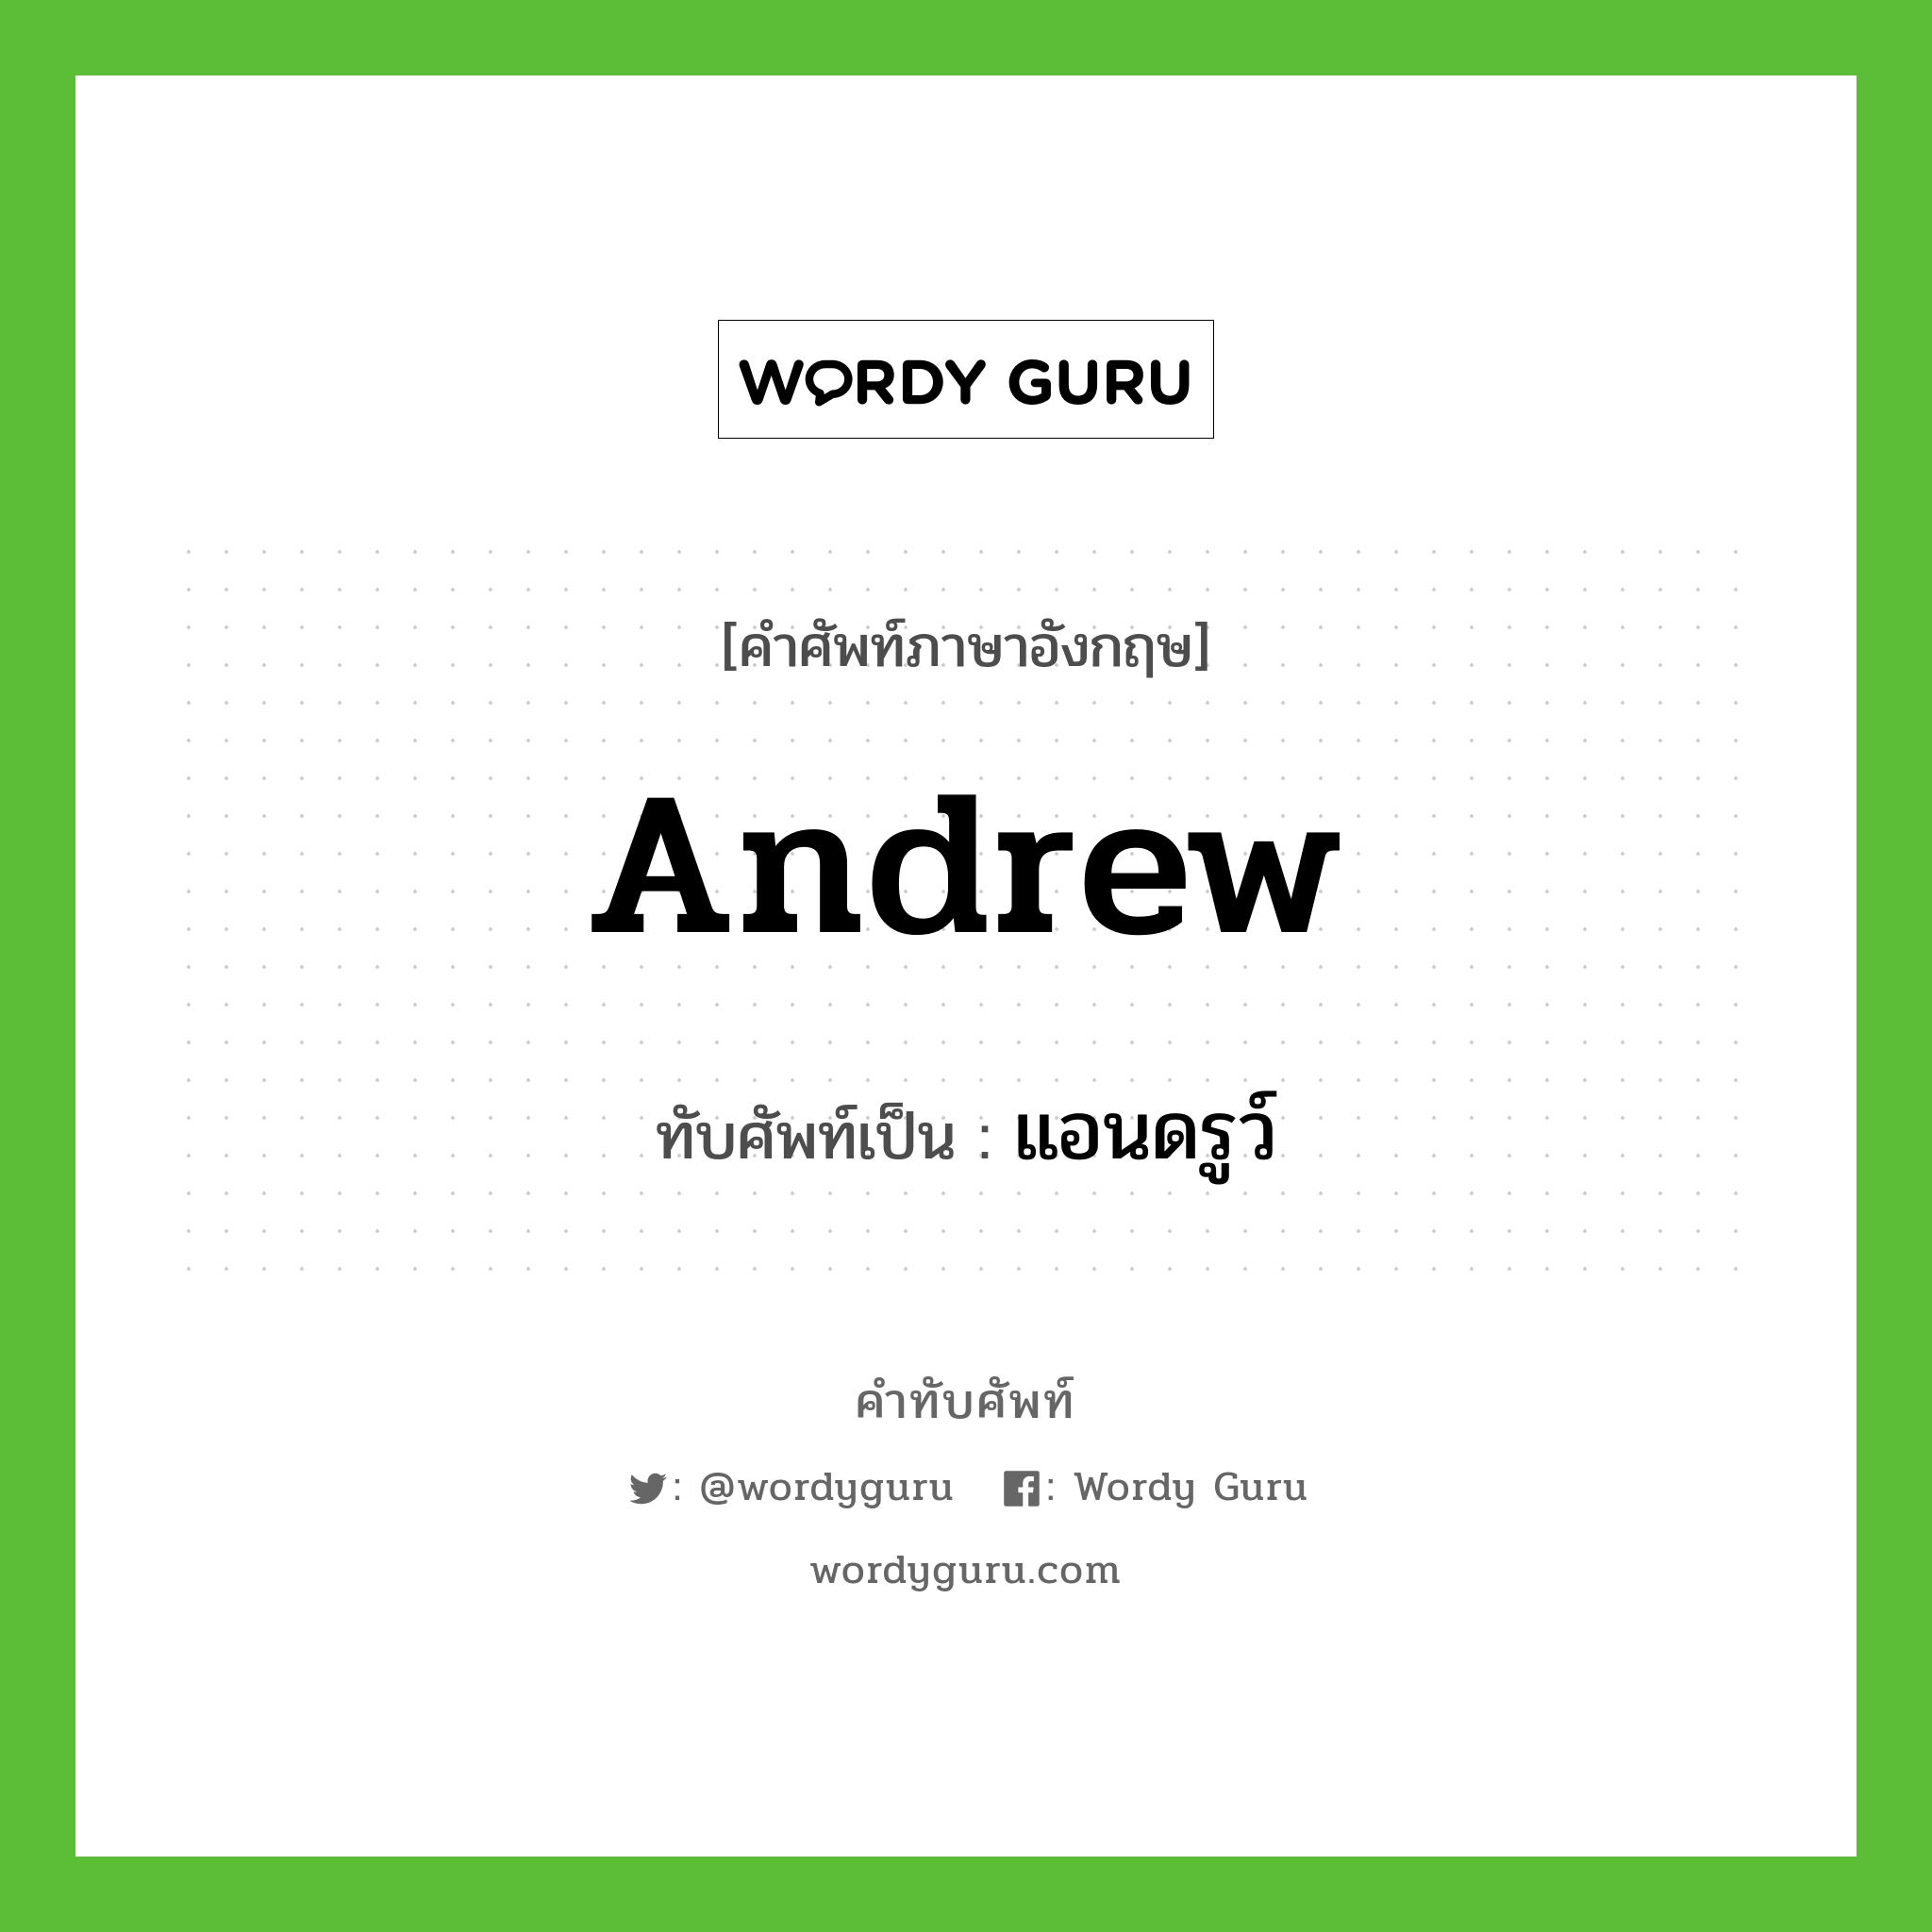 Andrew เขียนเป็นคำไทยว่าอะไร?, คำศัพท์ภาษาอังกฤษ Andrew ทับศัพท์เป็น แอนดรูว์